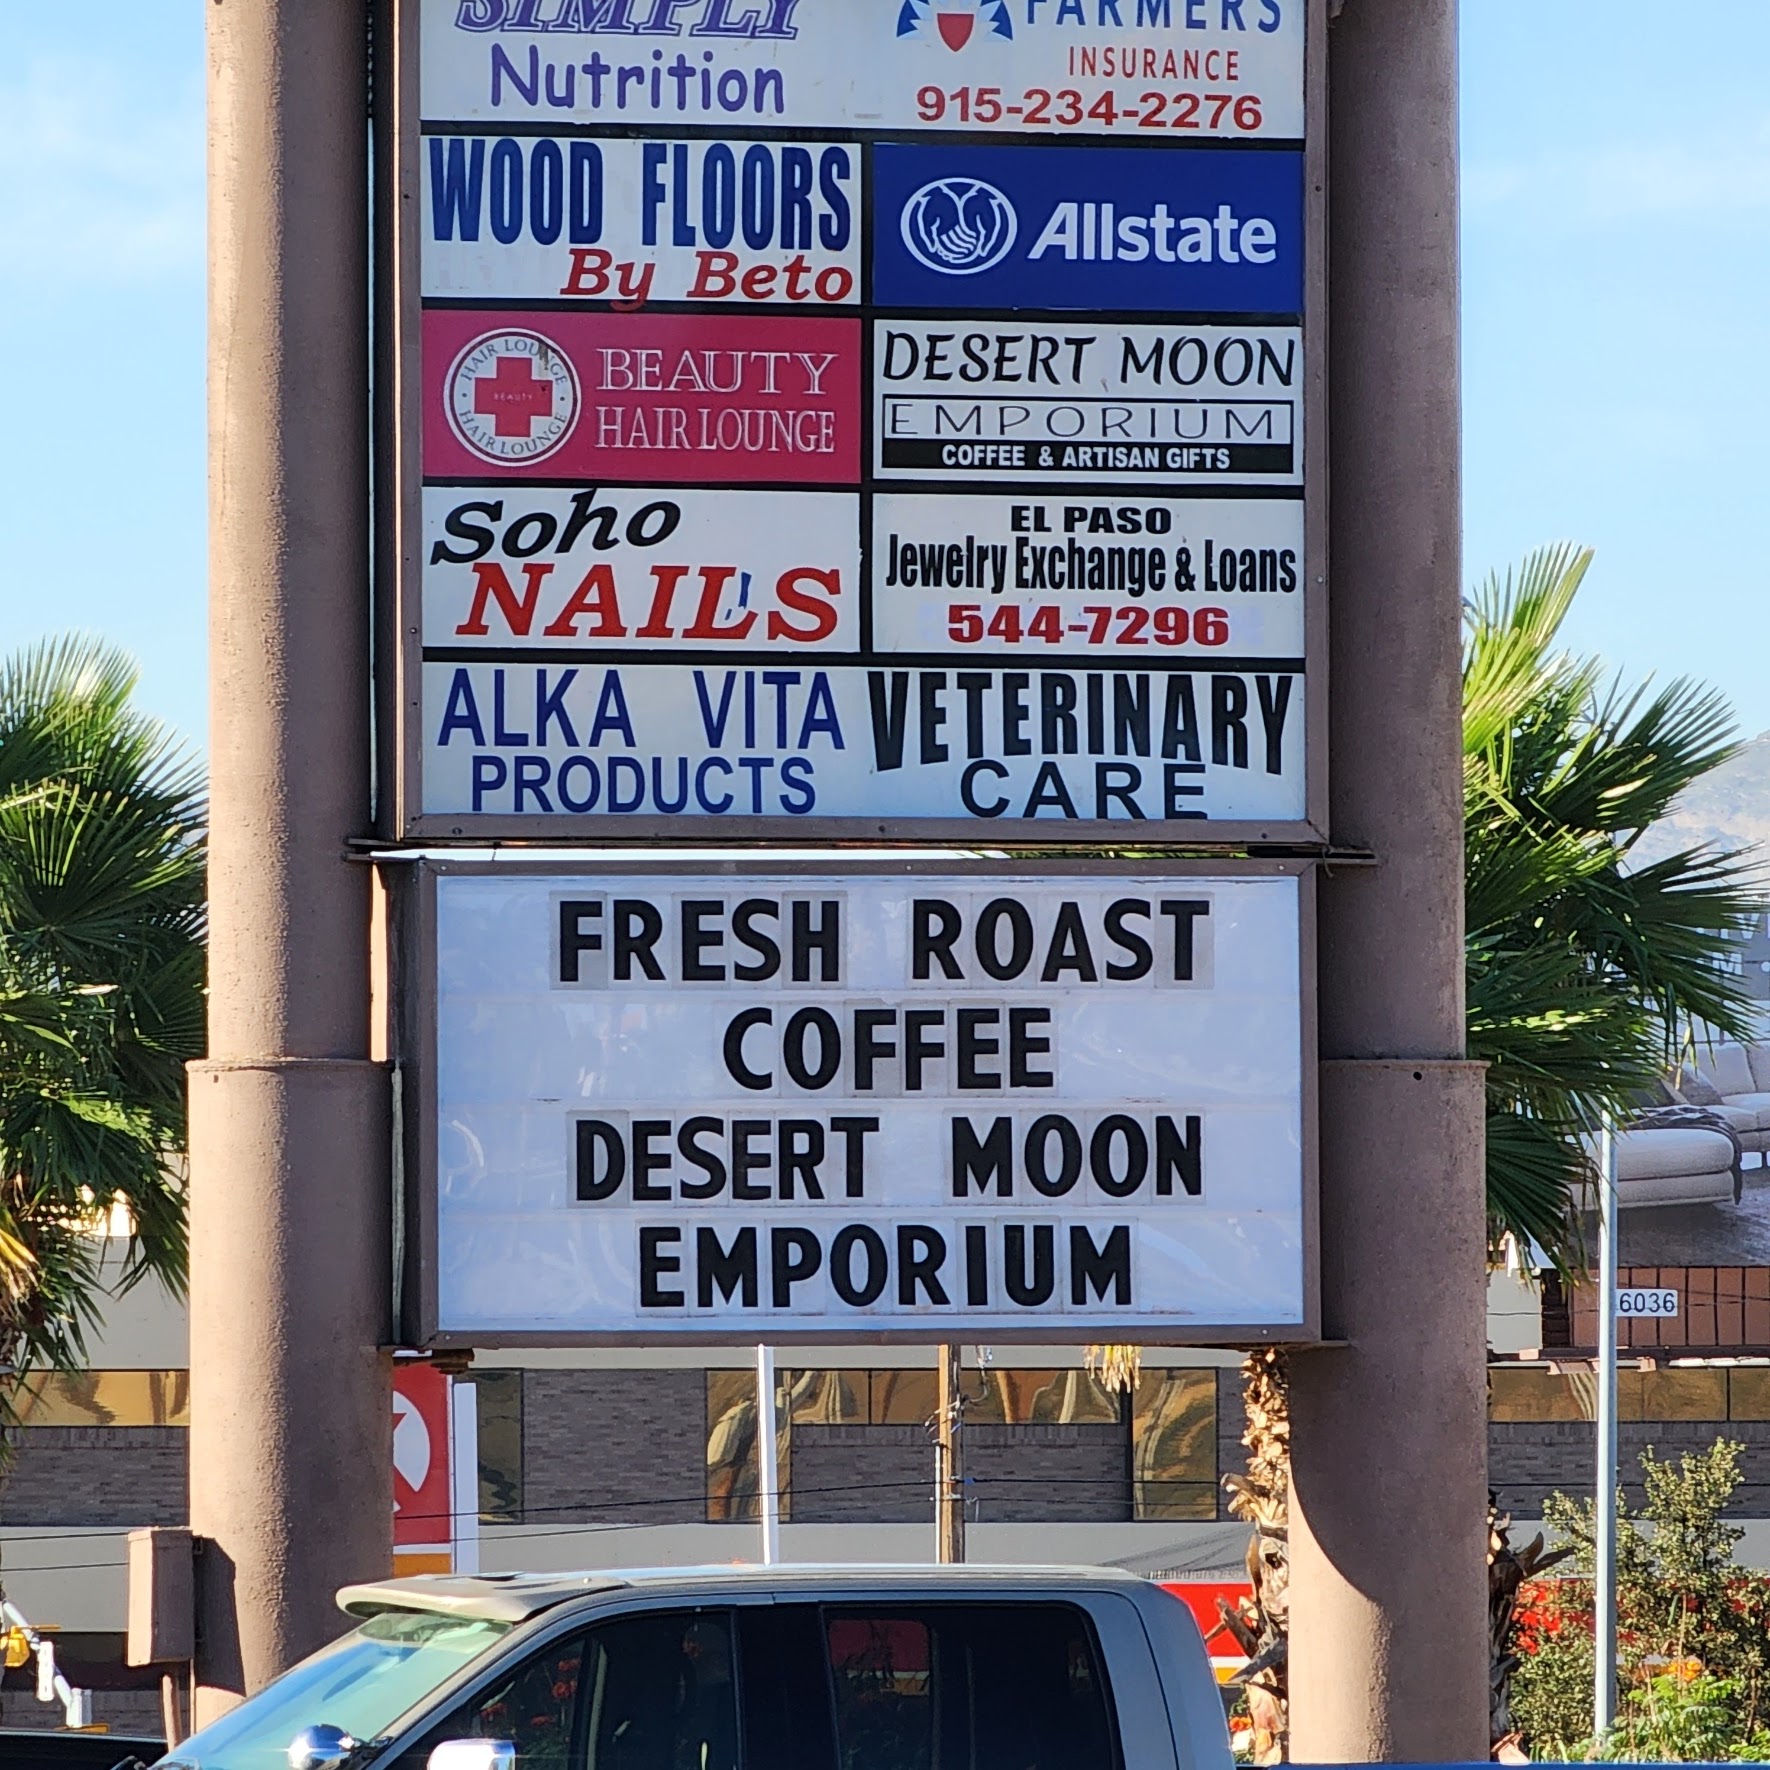 The Desert Moon Emporium, LLC